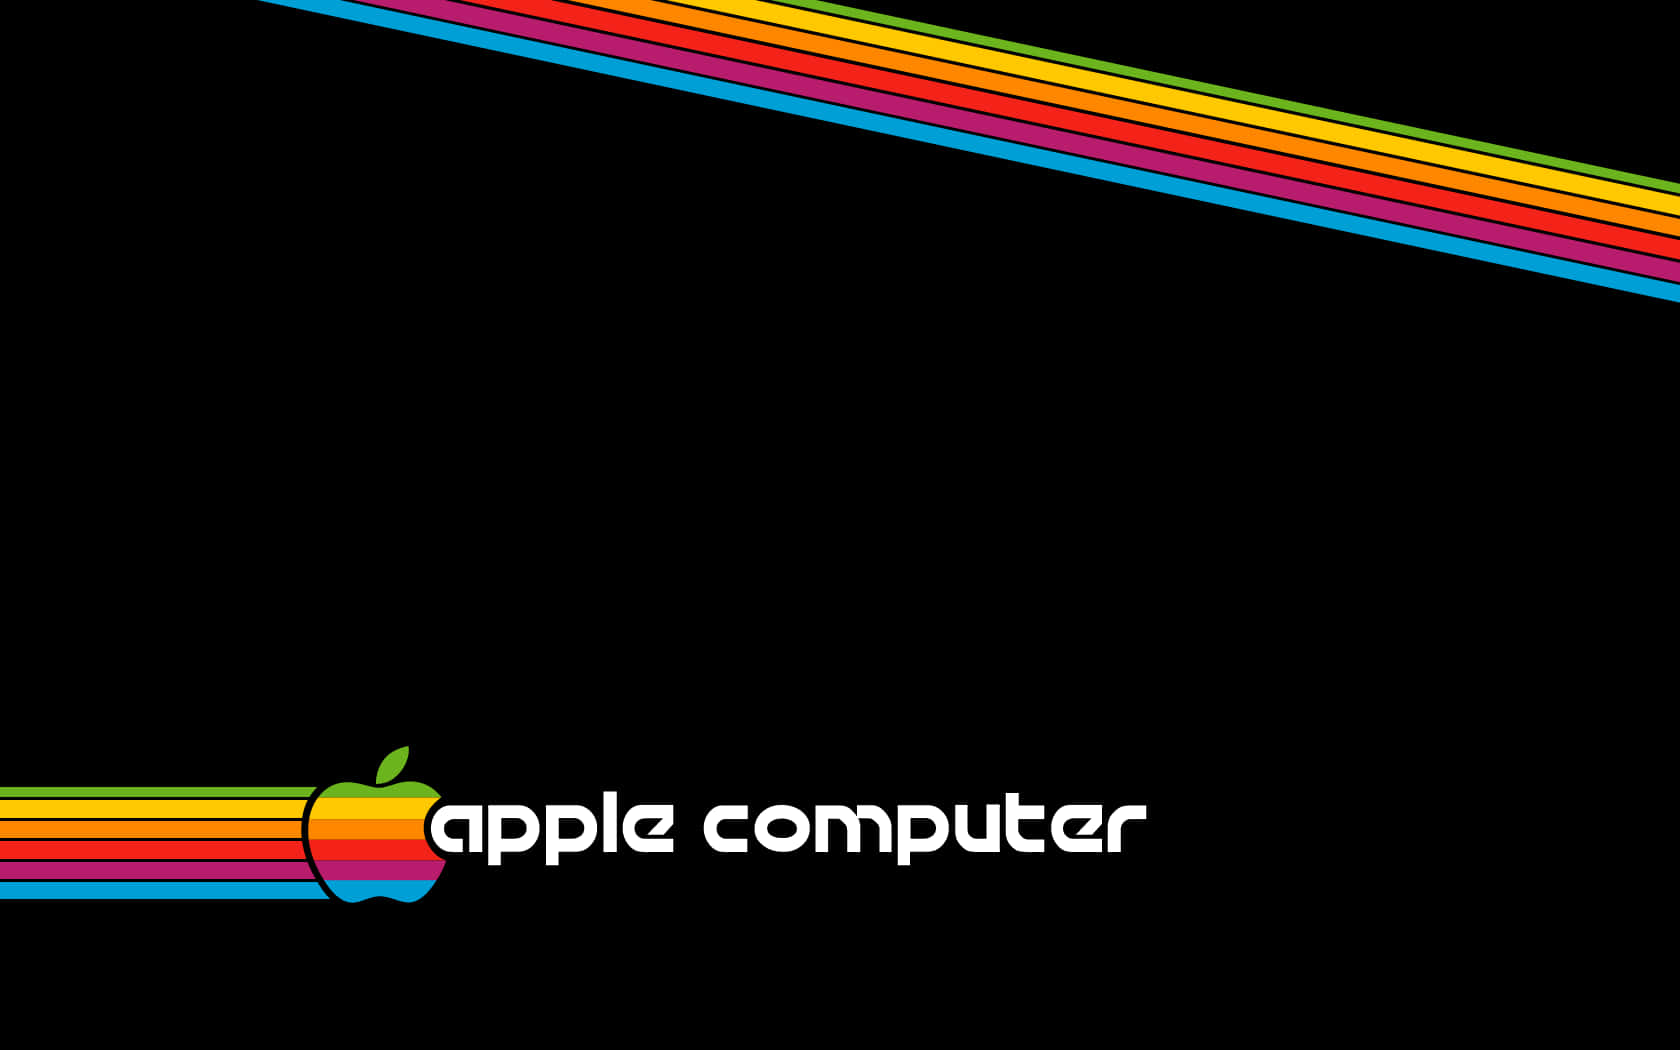 Logotipode Apple En Un Fondo Negro Fondo de pantalla